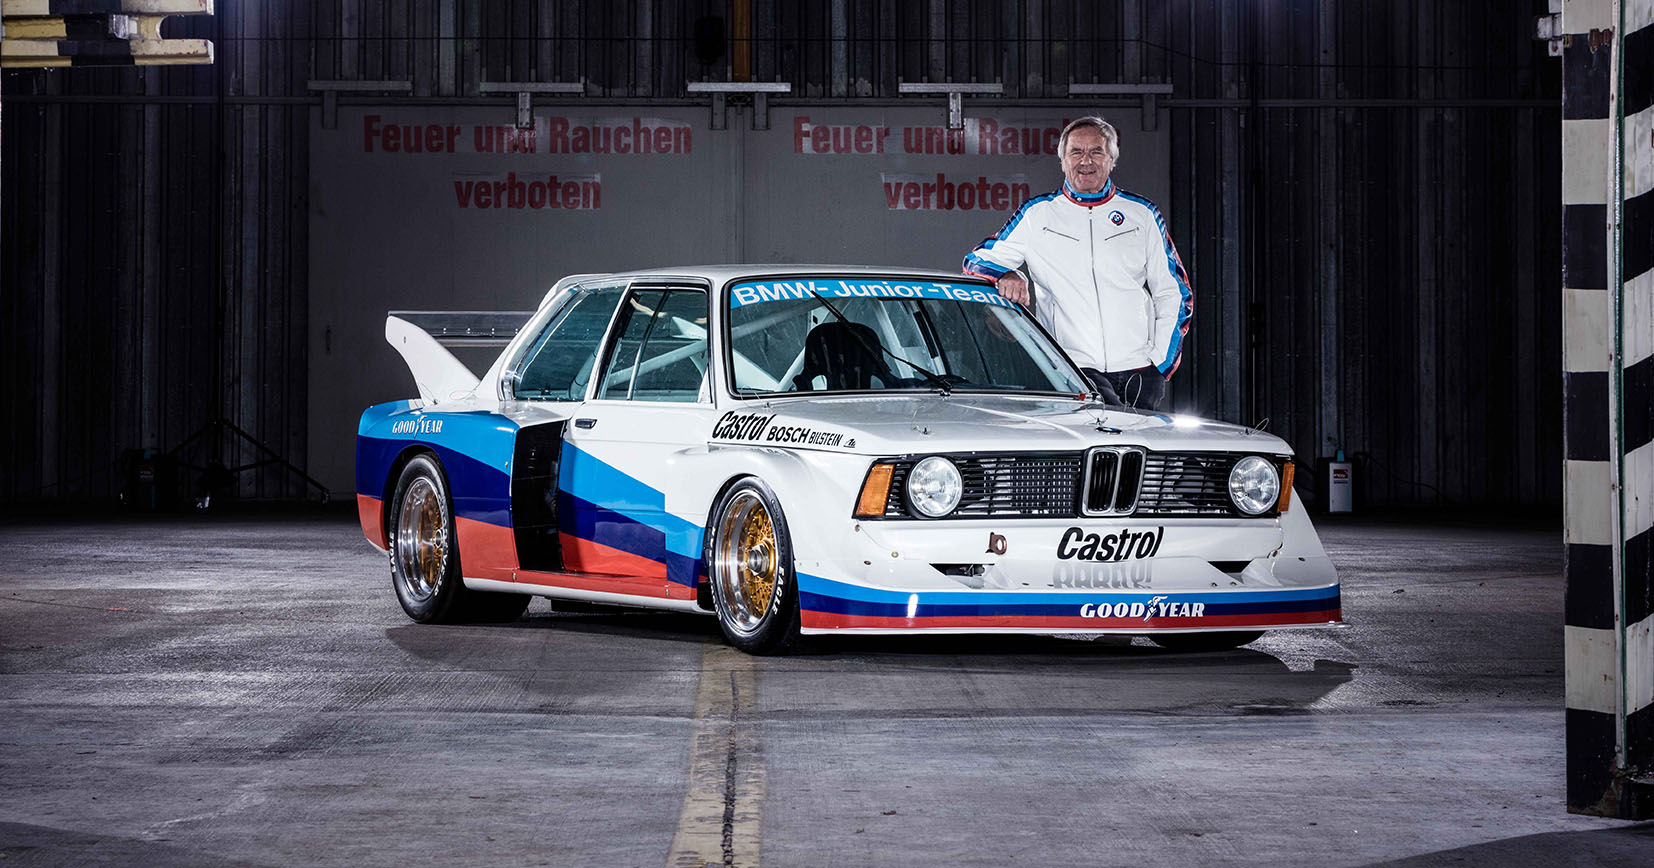 1982 - BMW Maisach (GER), Jubiläum, 40 Jahre, Event, Shooting. BMW 320 Gruppe 5, Jochen Neerpasch